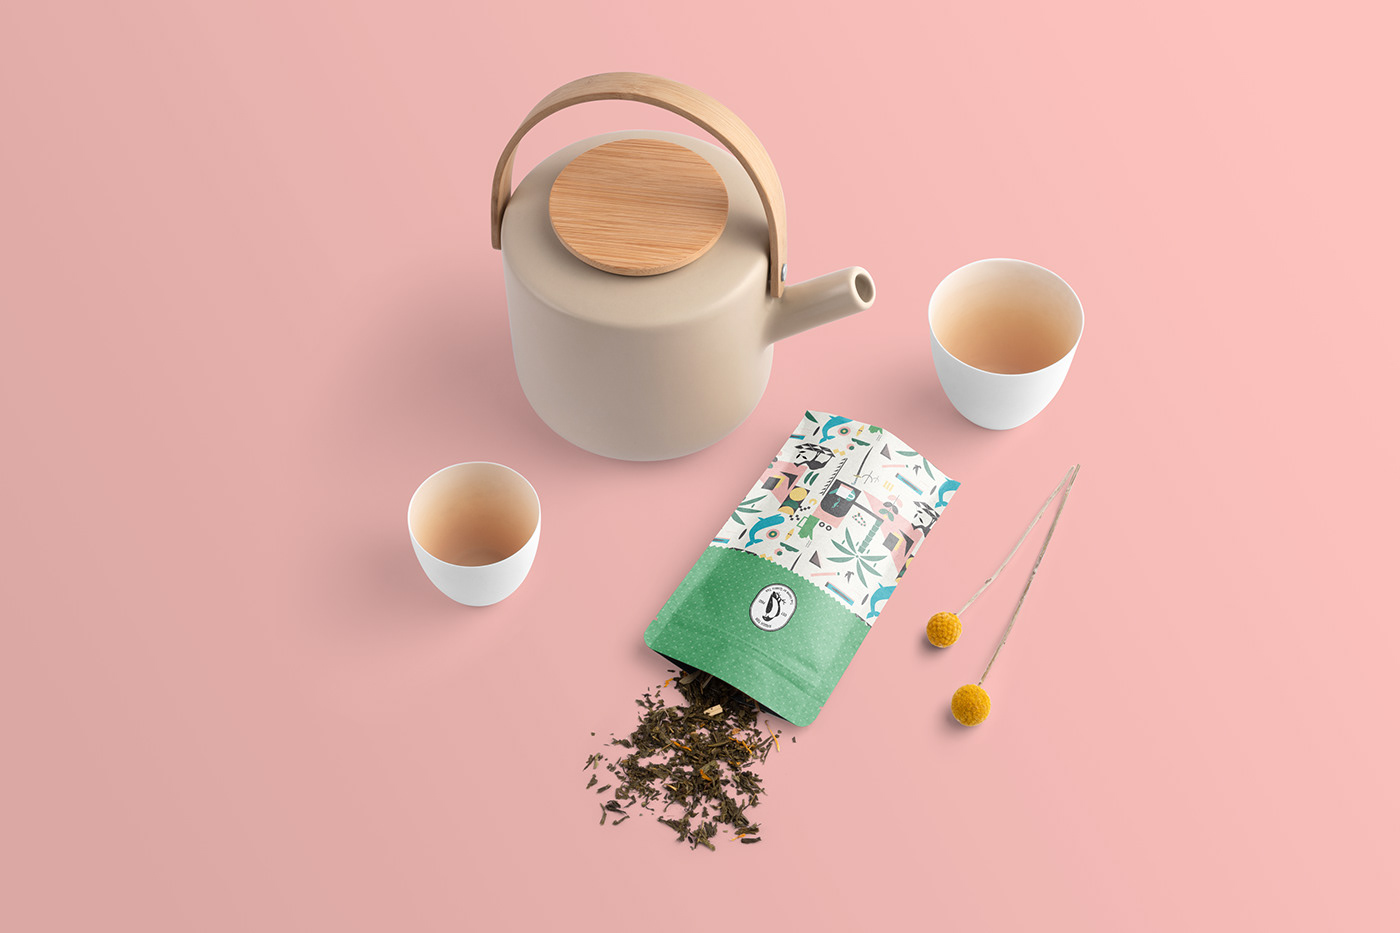 茶叶包装设计作品图集 